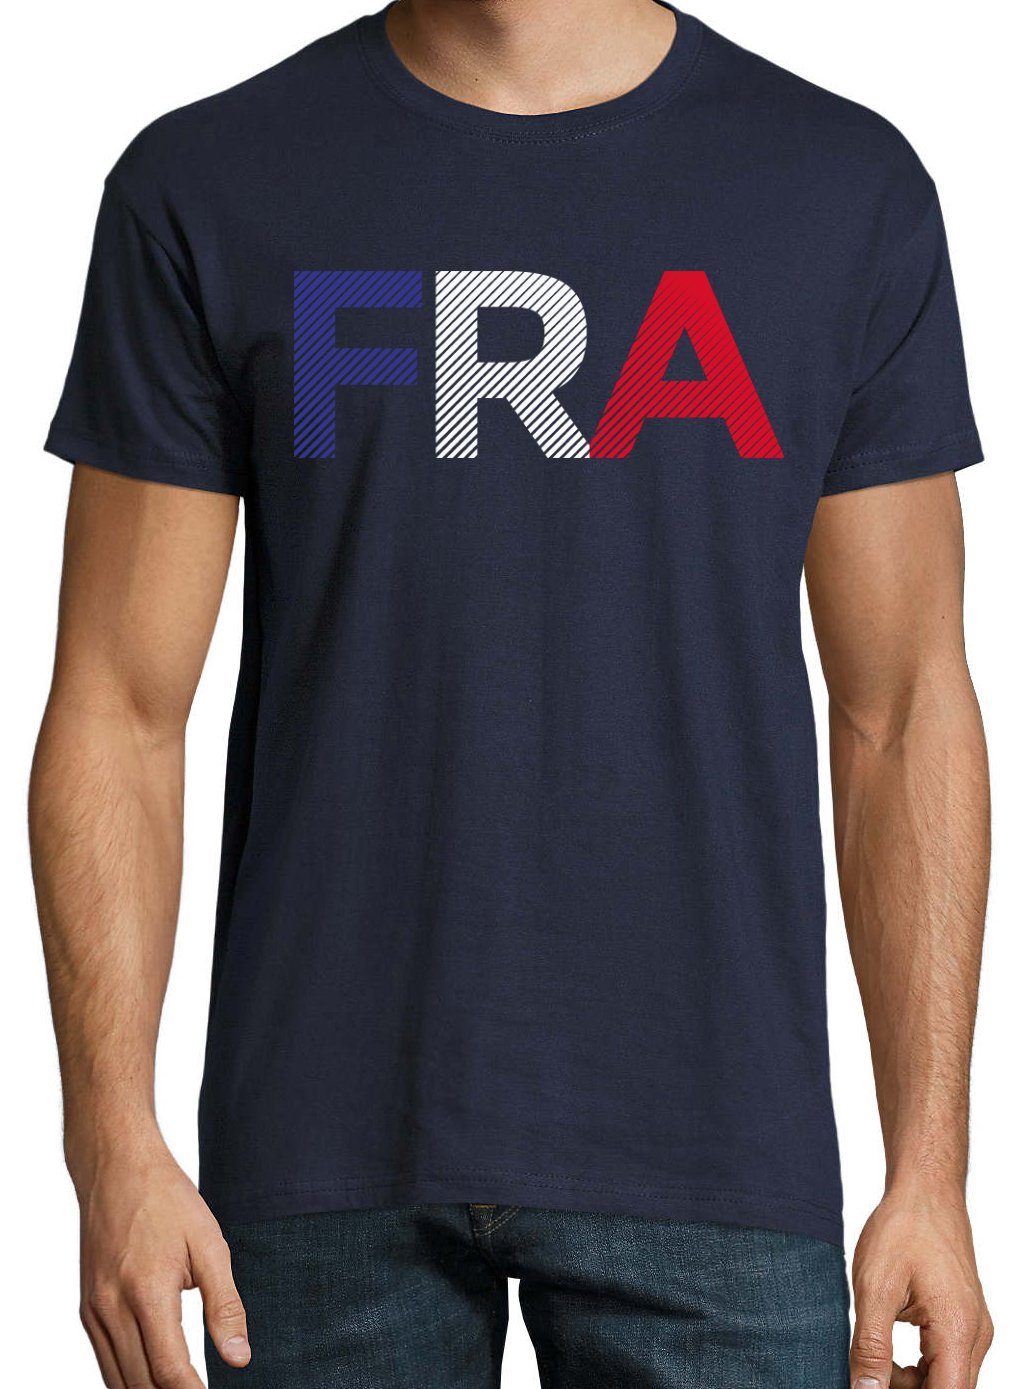 Frontdruck T-Shirt Designz Look Navy mit Trendigem Fußball Frankreich Youth FRA im Herren T-Shirt